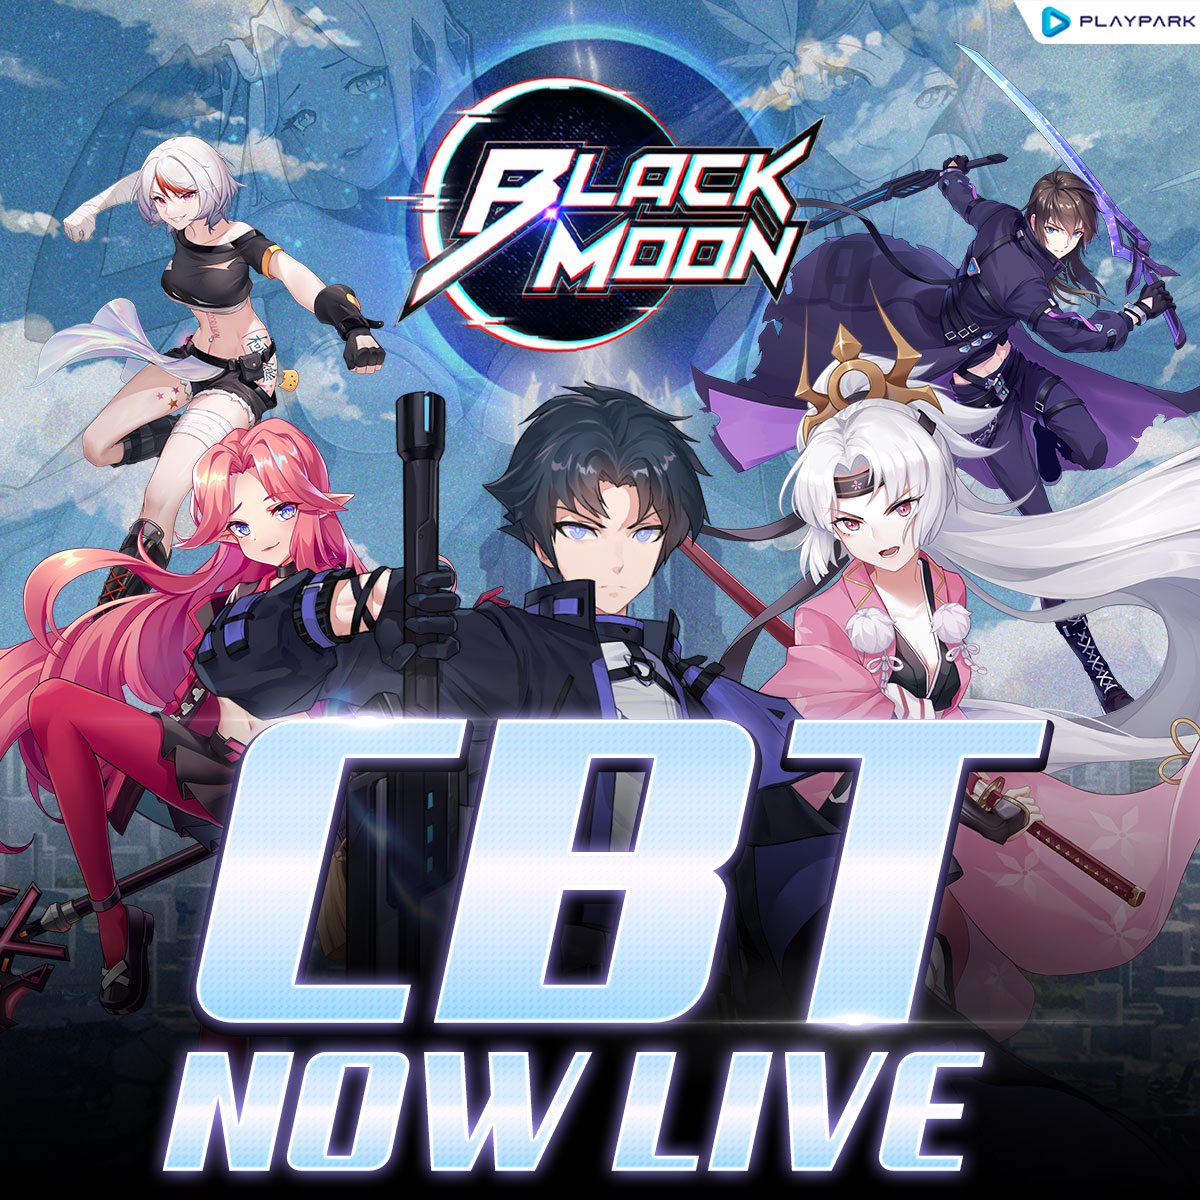 Black Moon, Action RPG Yang Akan Datang Melakukan Closed Beta Test Untuk Android Di Wilayah Asia Tenggara